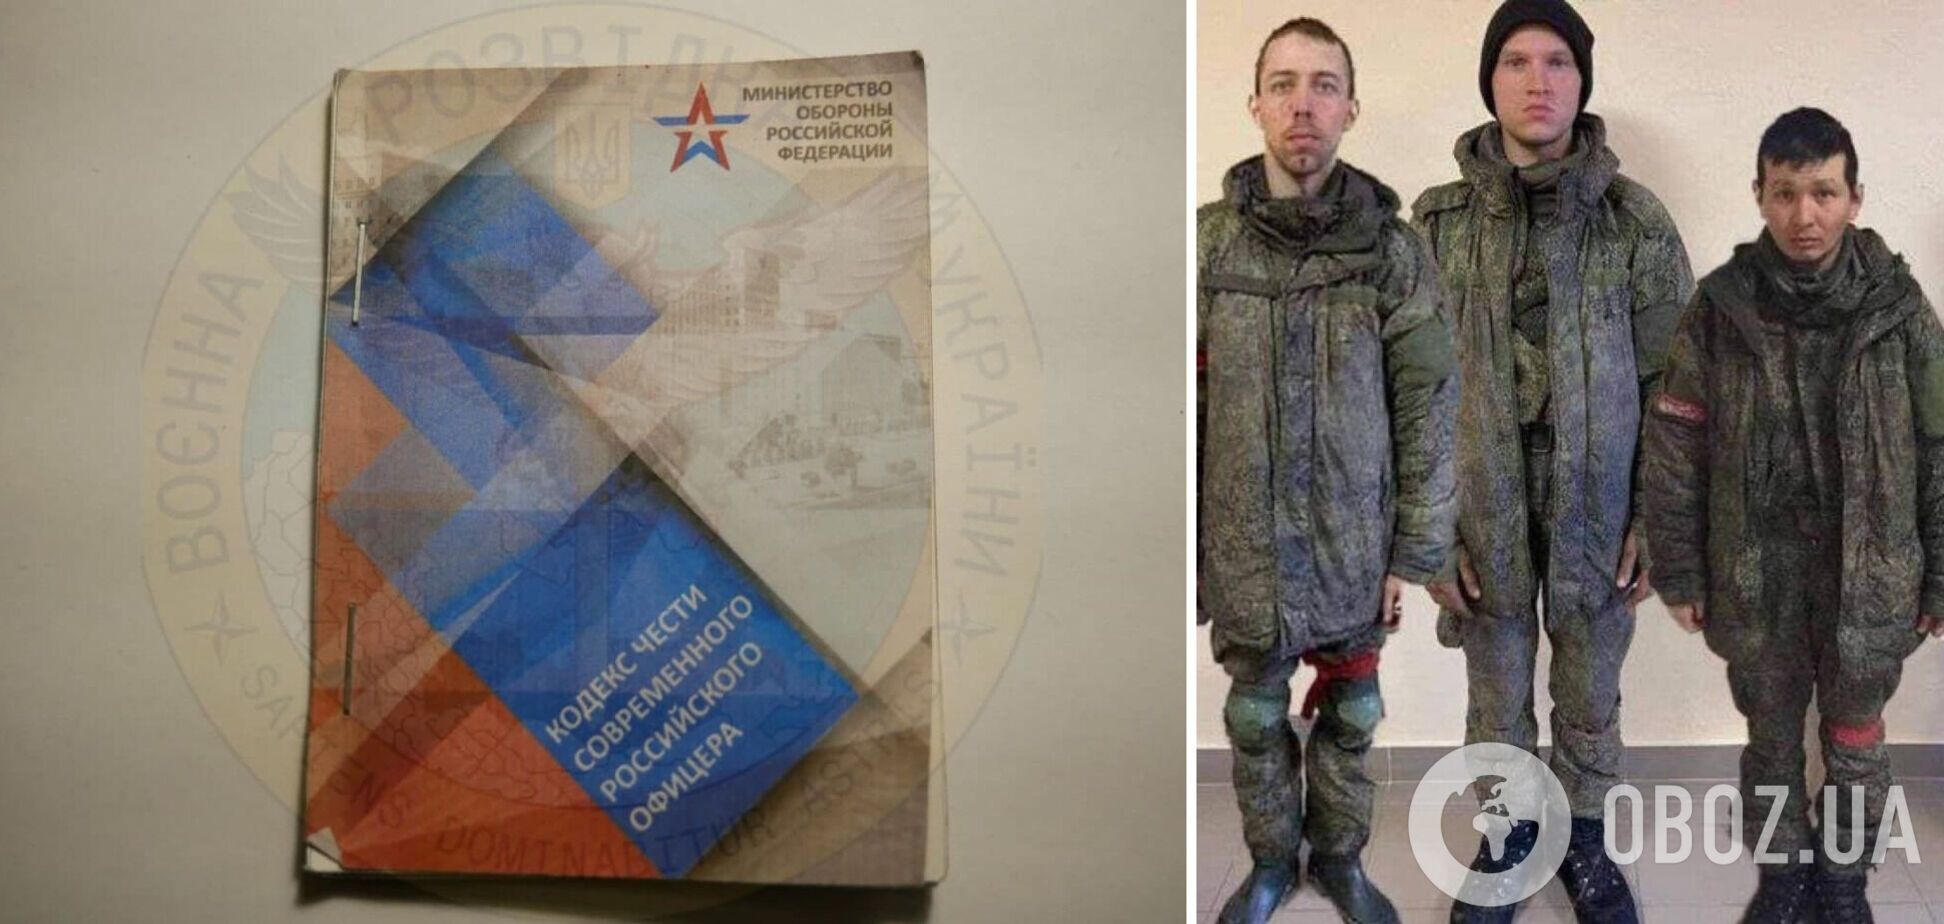 'Российский офицер готов умереть без имени': в сети показали методички, которые раздавали оккупантам перед войной. Фото